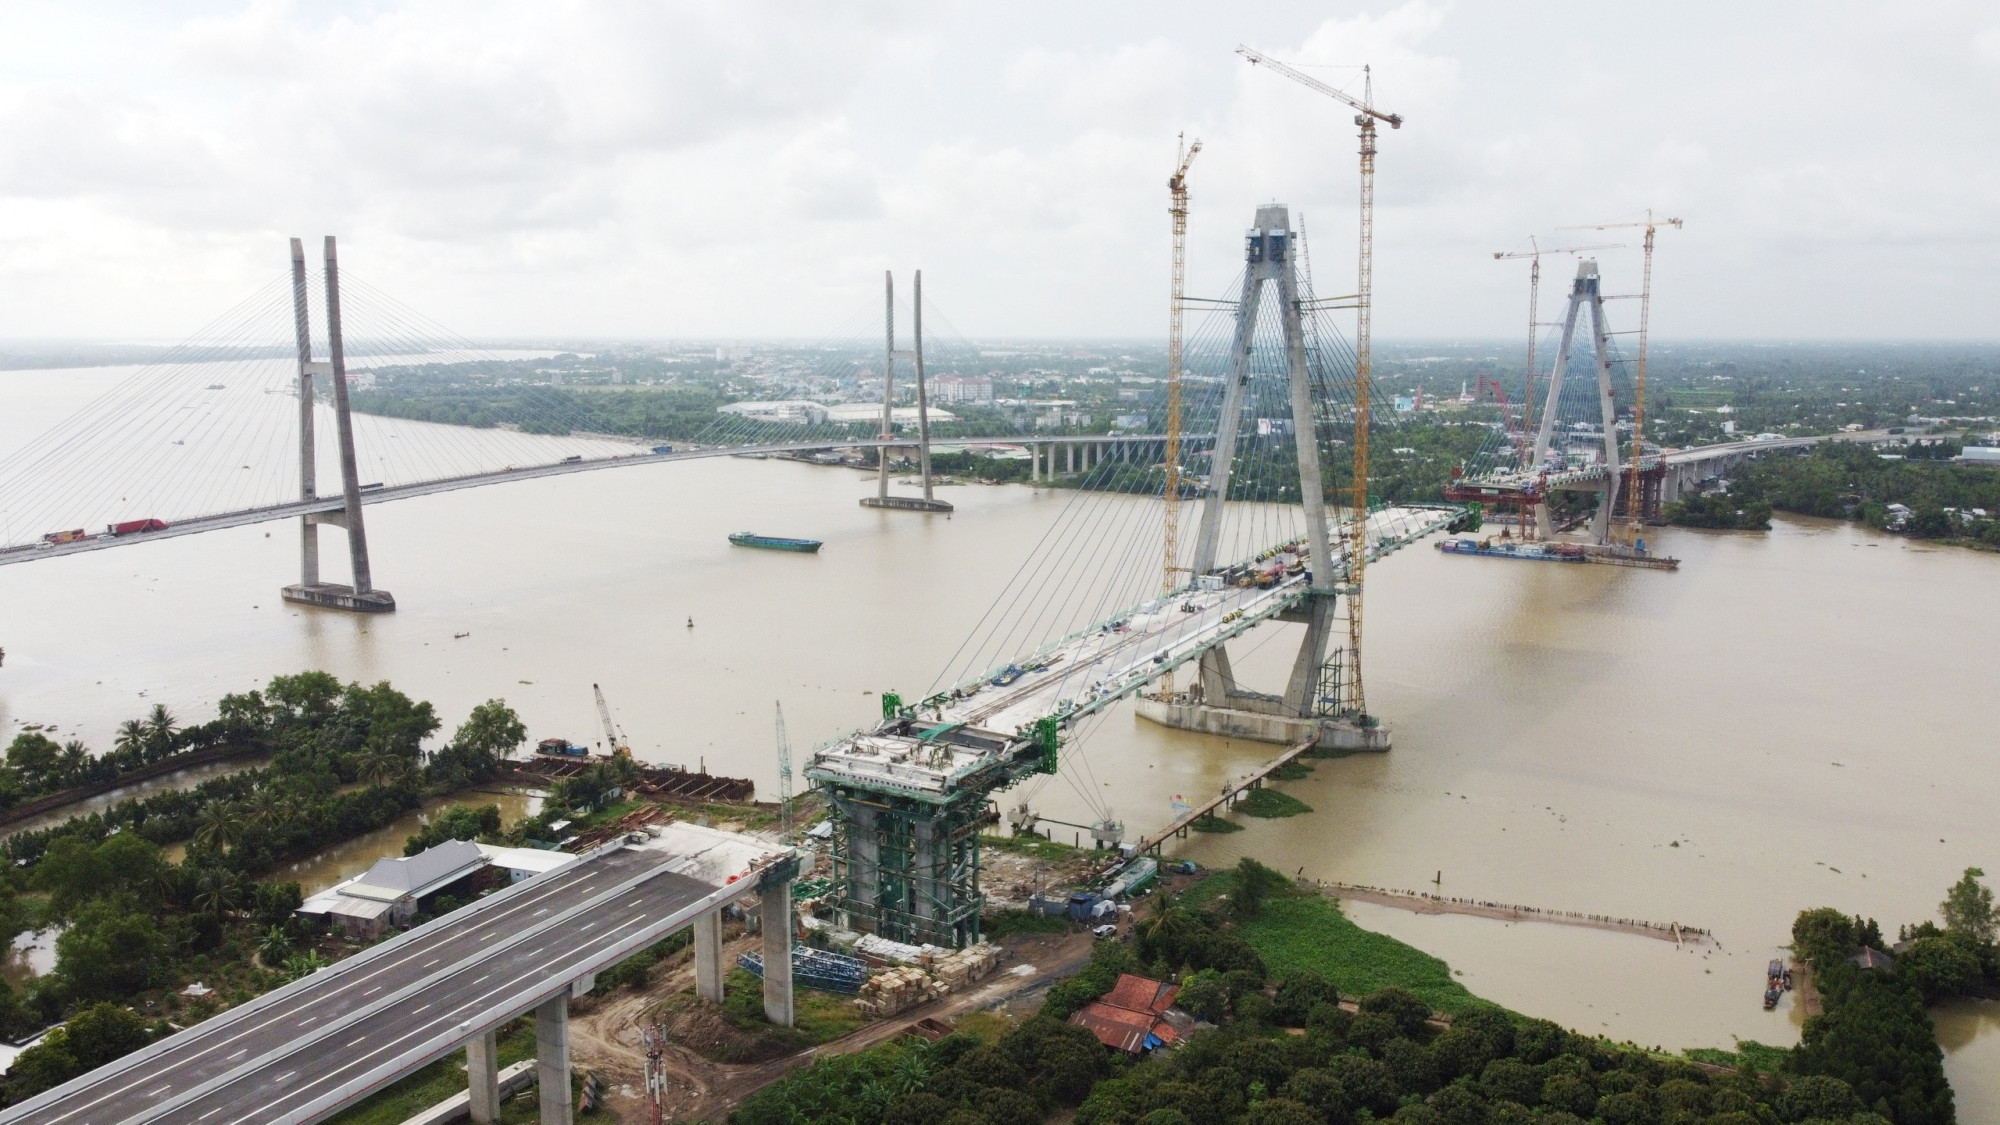 Cầu Mỹ Thuận 2 bắc qua sông Tiền, nối 2 tỉnh Vĩnh Long và Tiền Giang, song song với cầu Mỹ Thuận hiện hữu